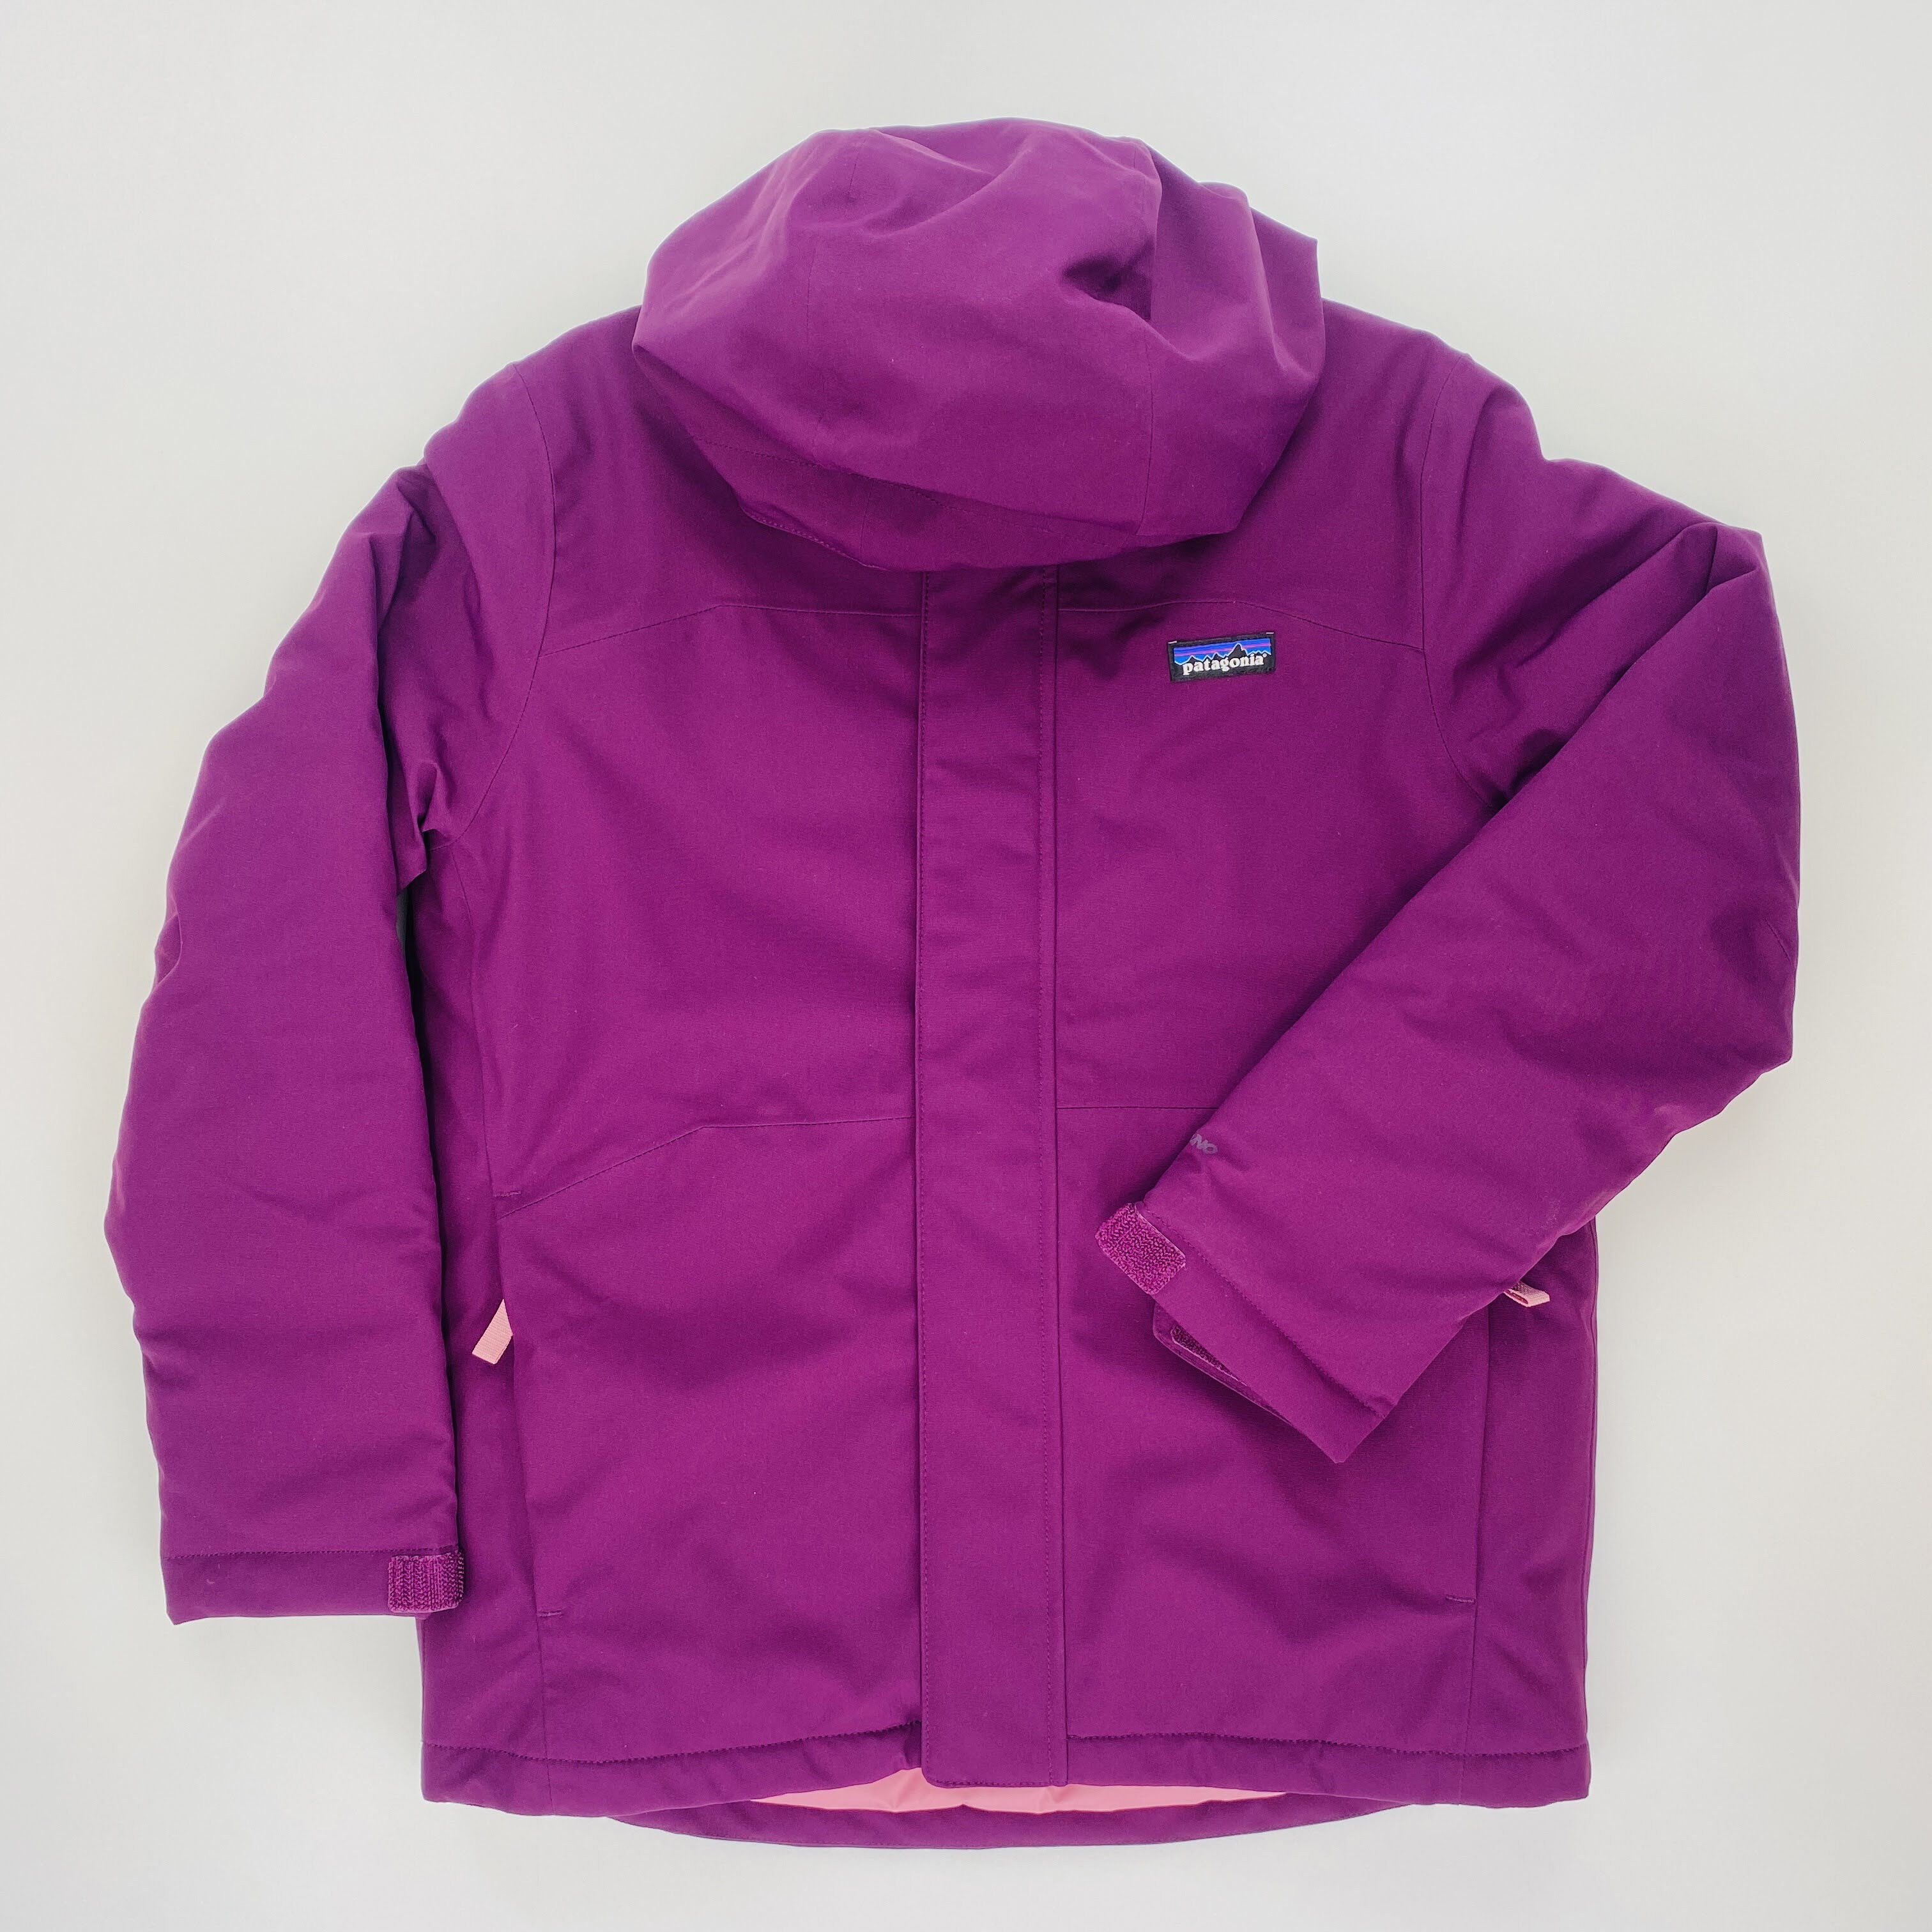 Patagonia Boys' Everyday Ready Jkt - Hand Waterproof jacket - Kid's - Purple - M / 10 | Hardloop